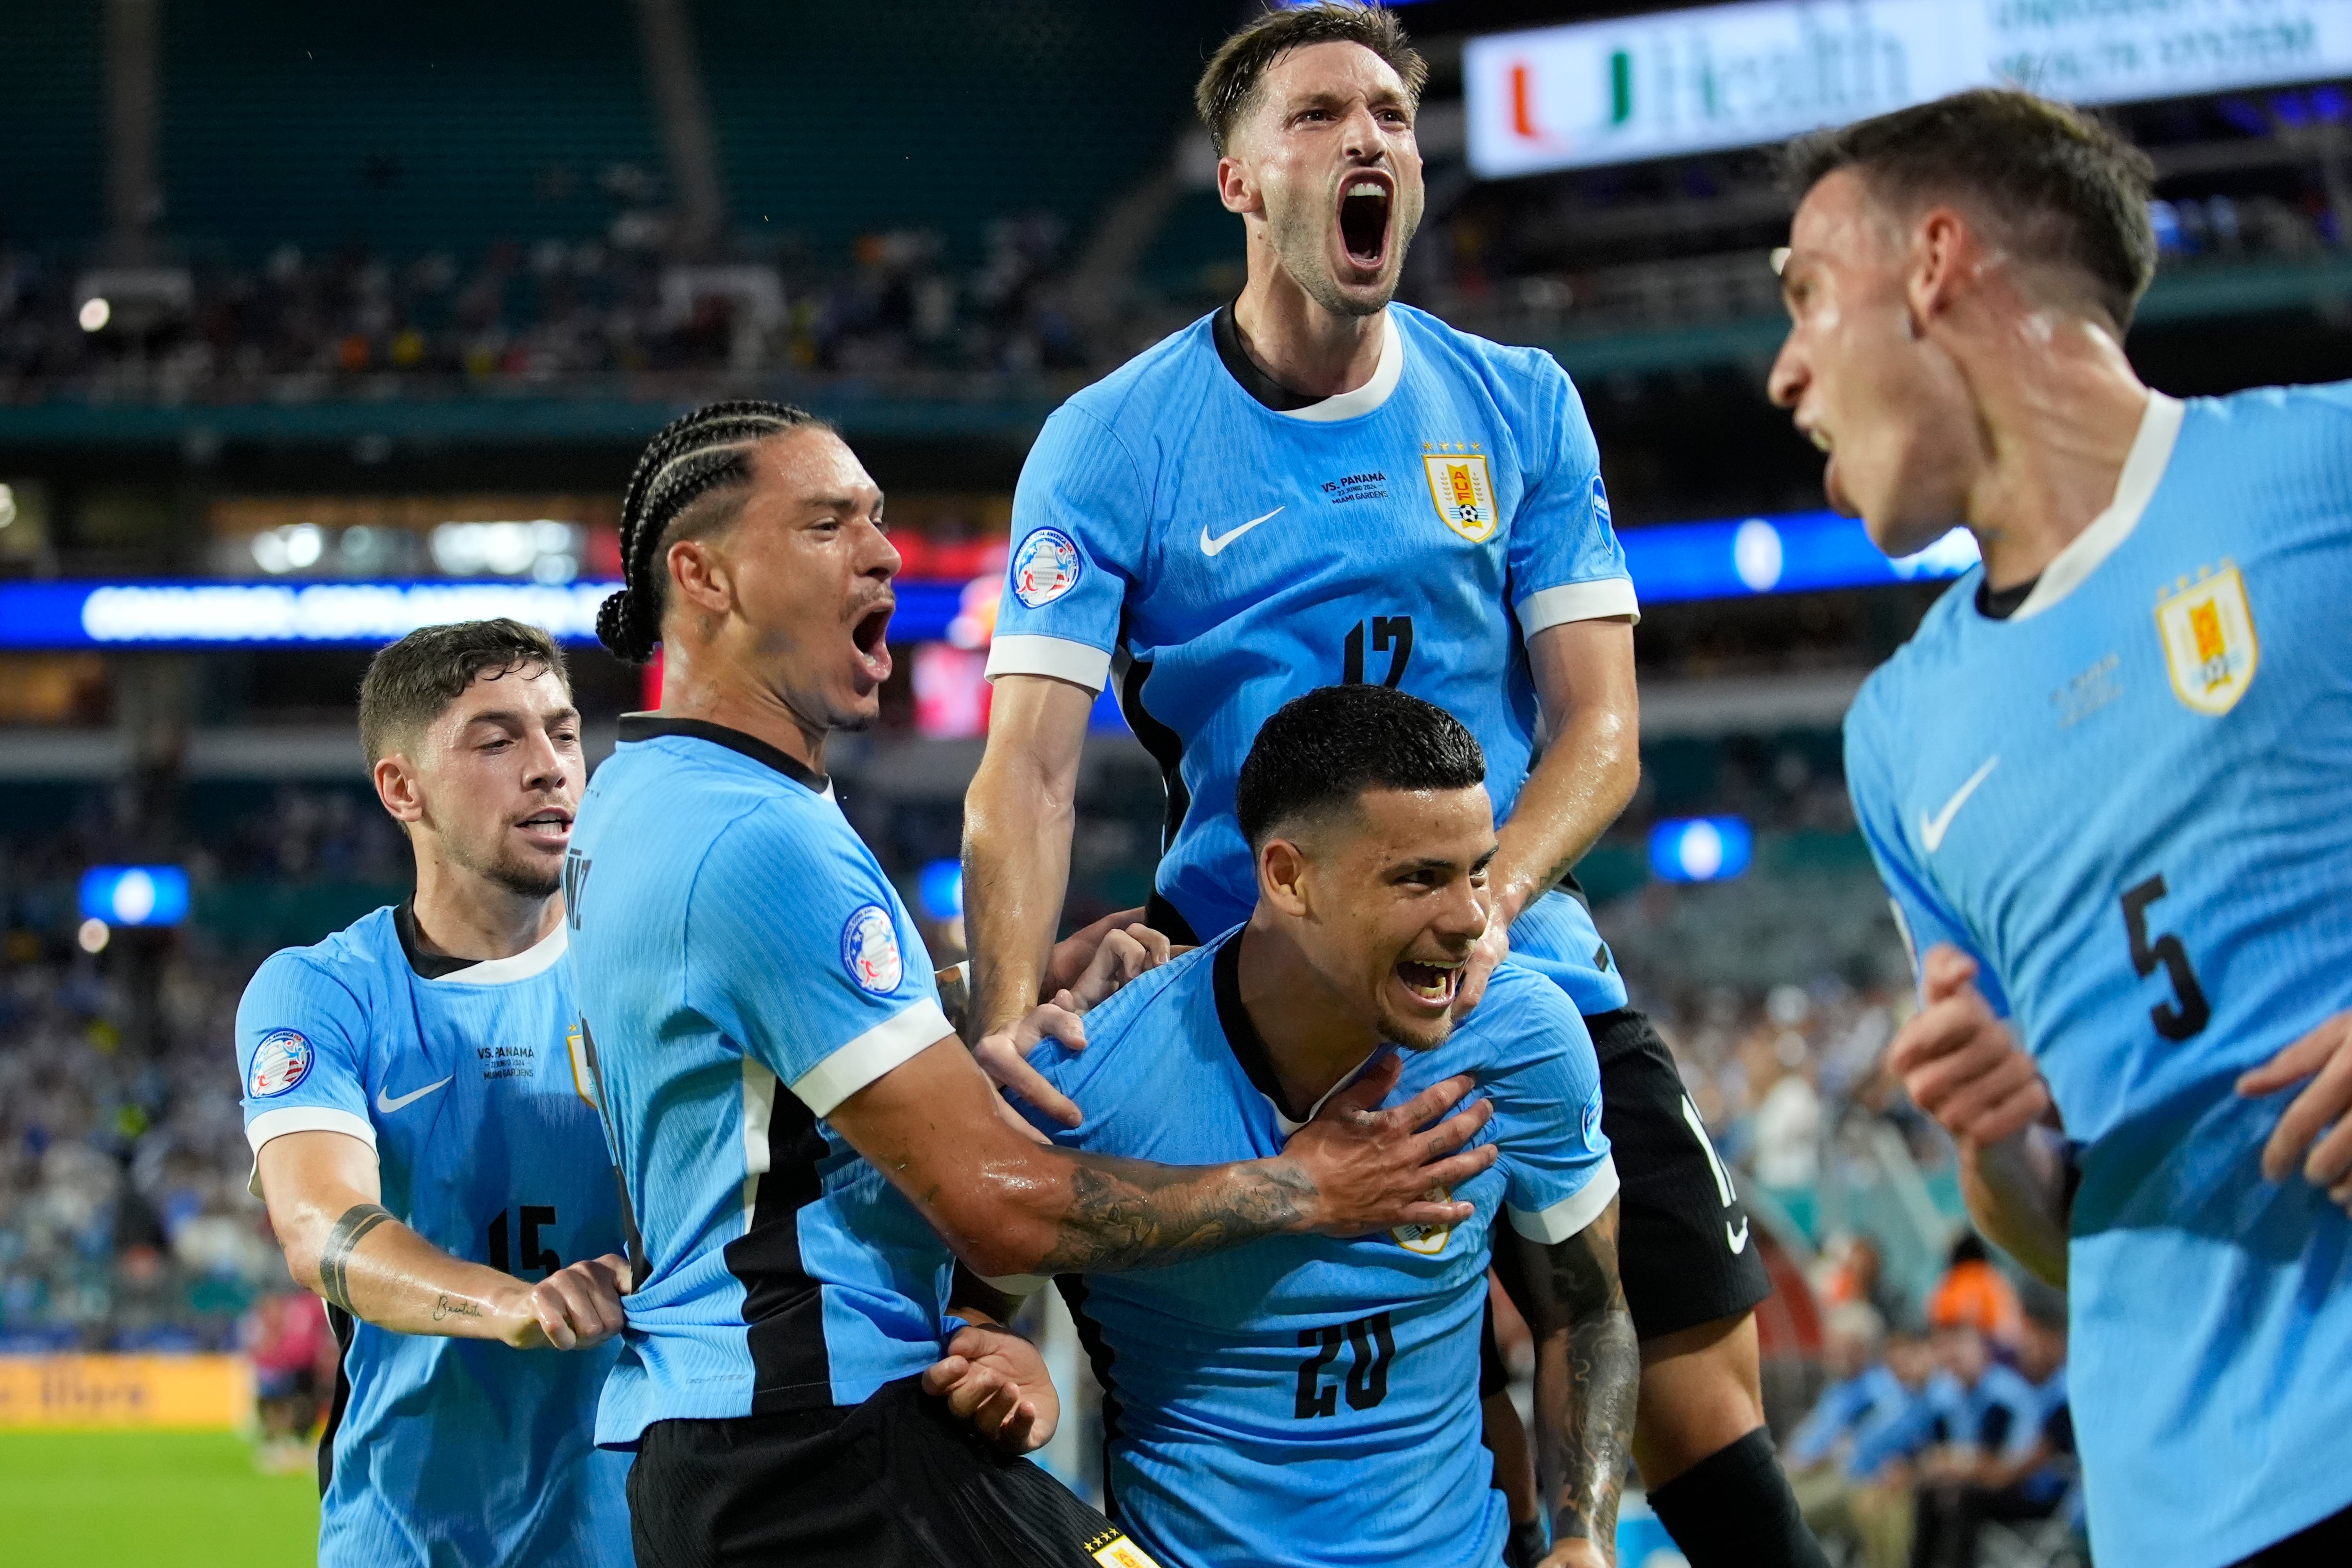 Celebración del gol de Uruguay